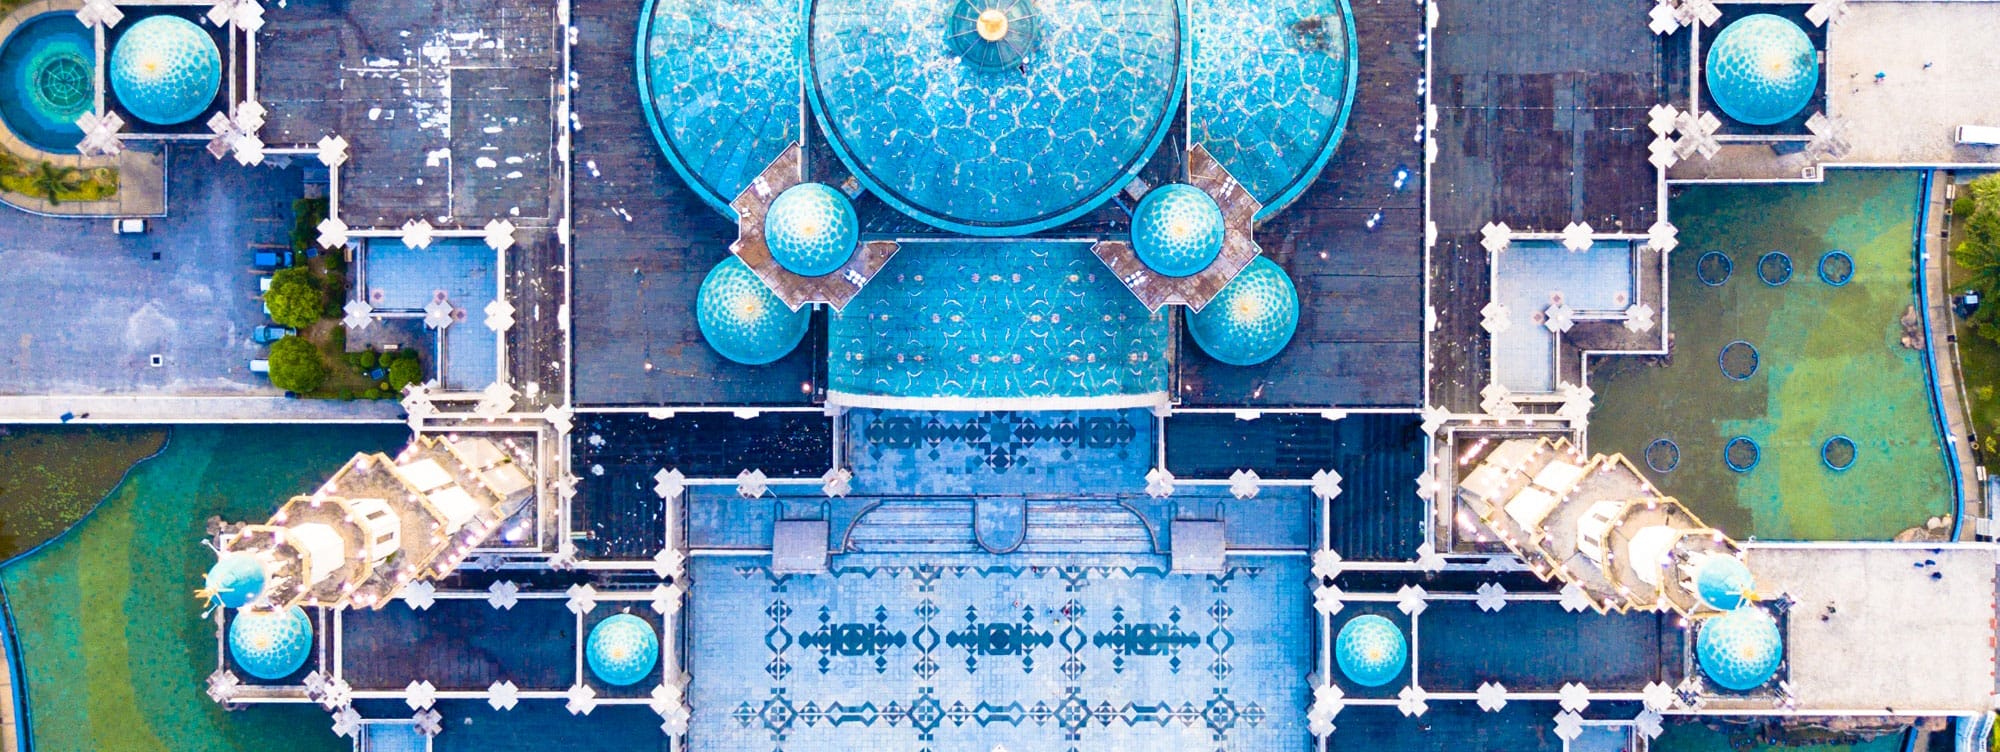 Iran mosque